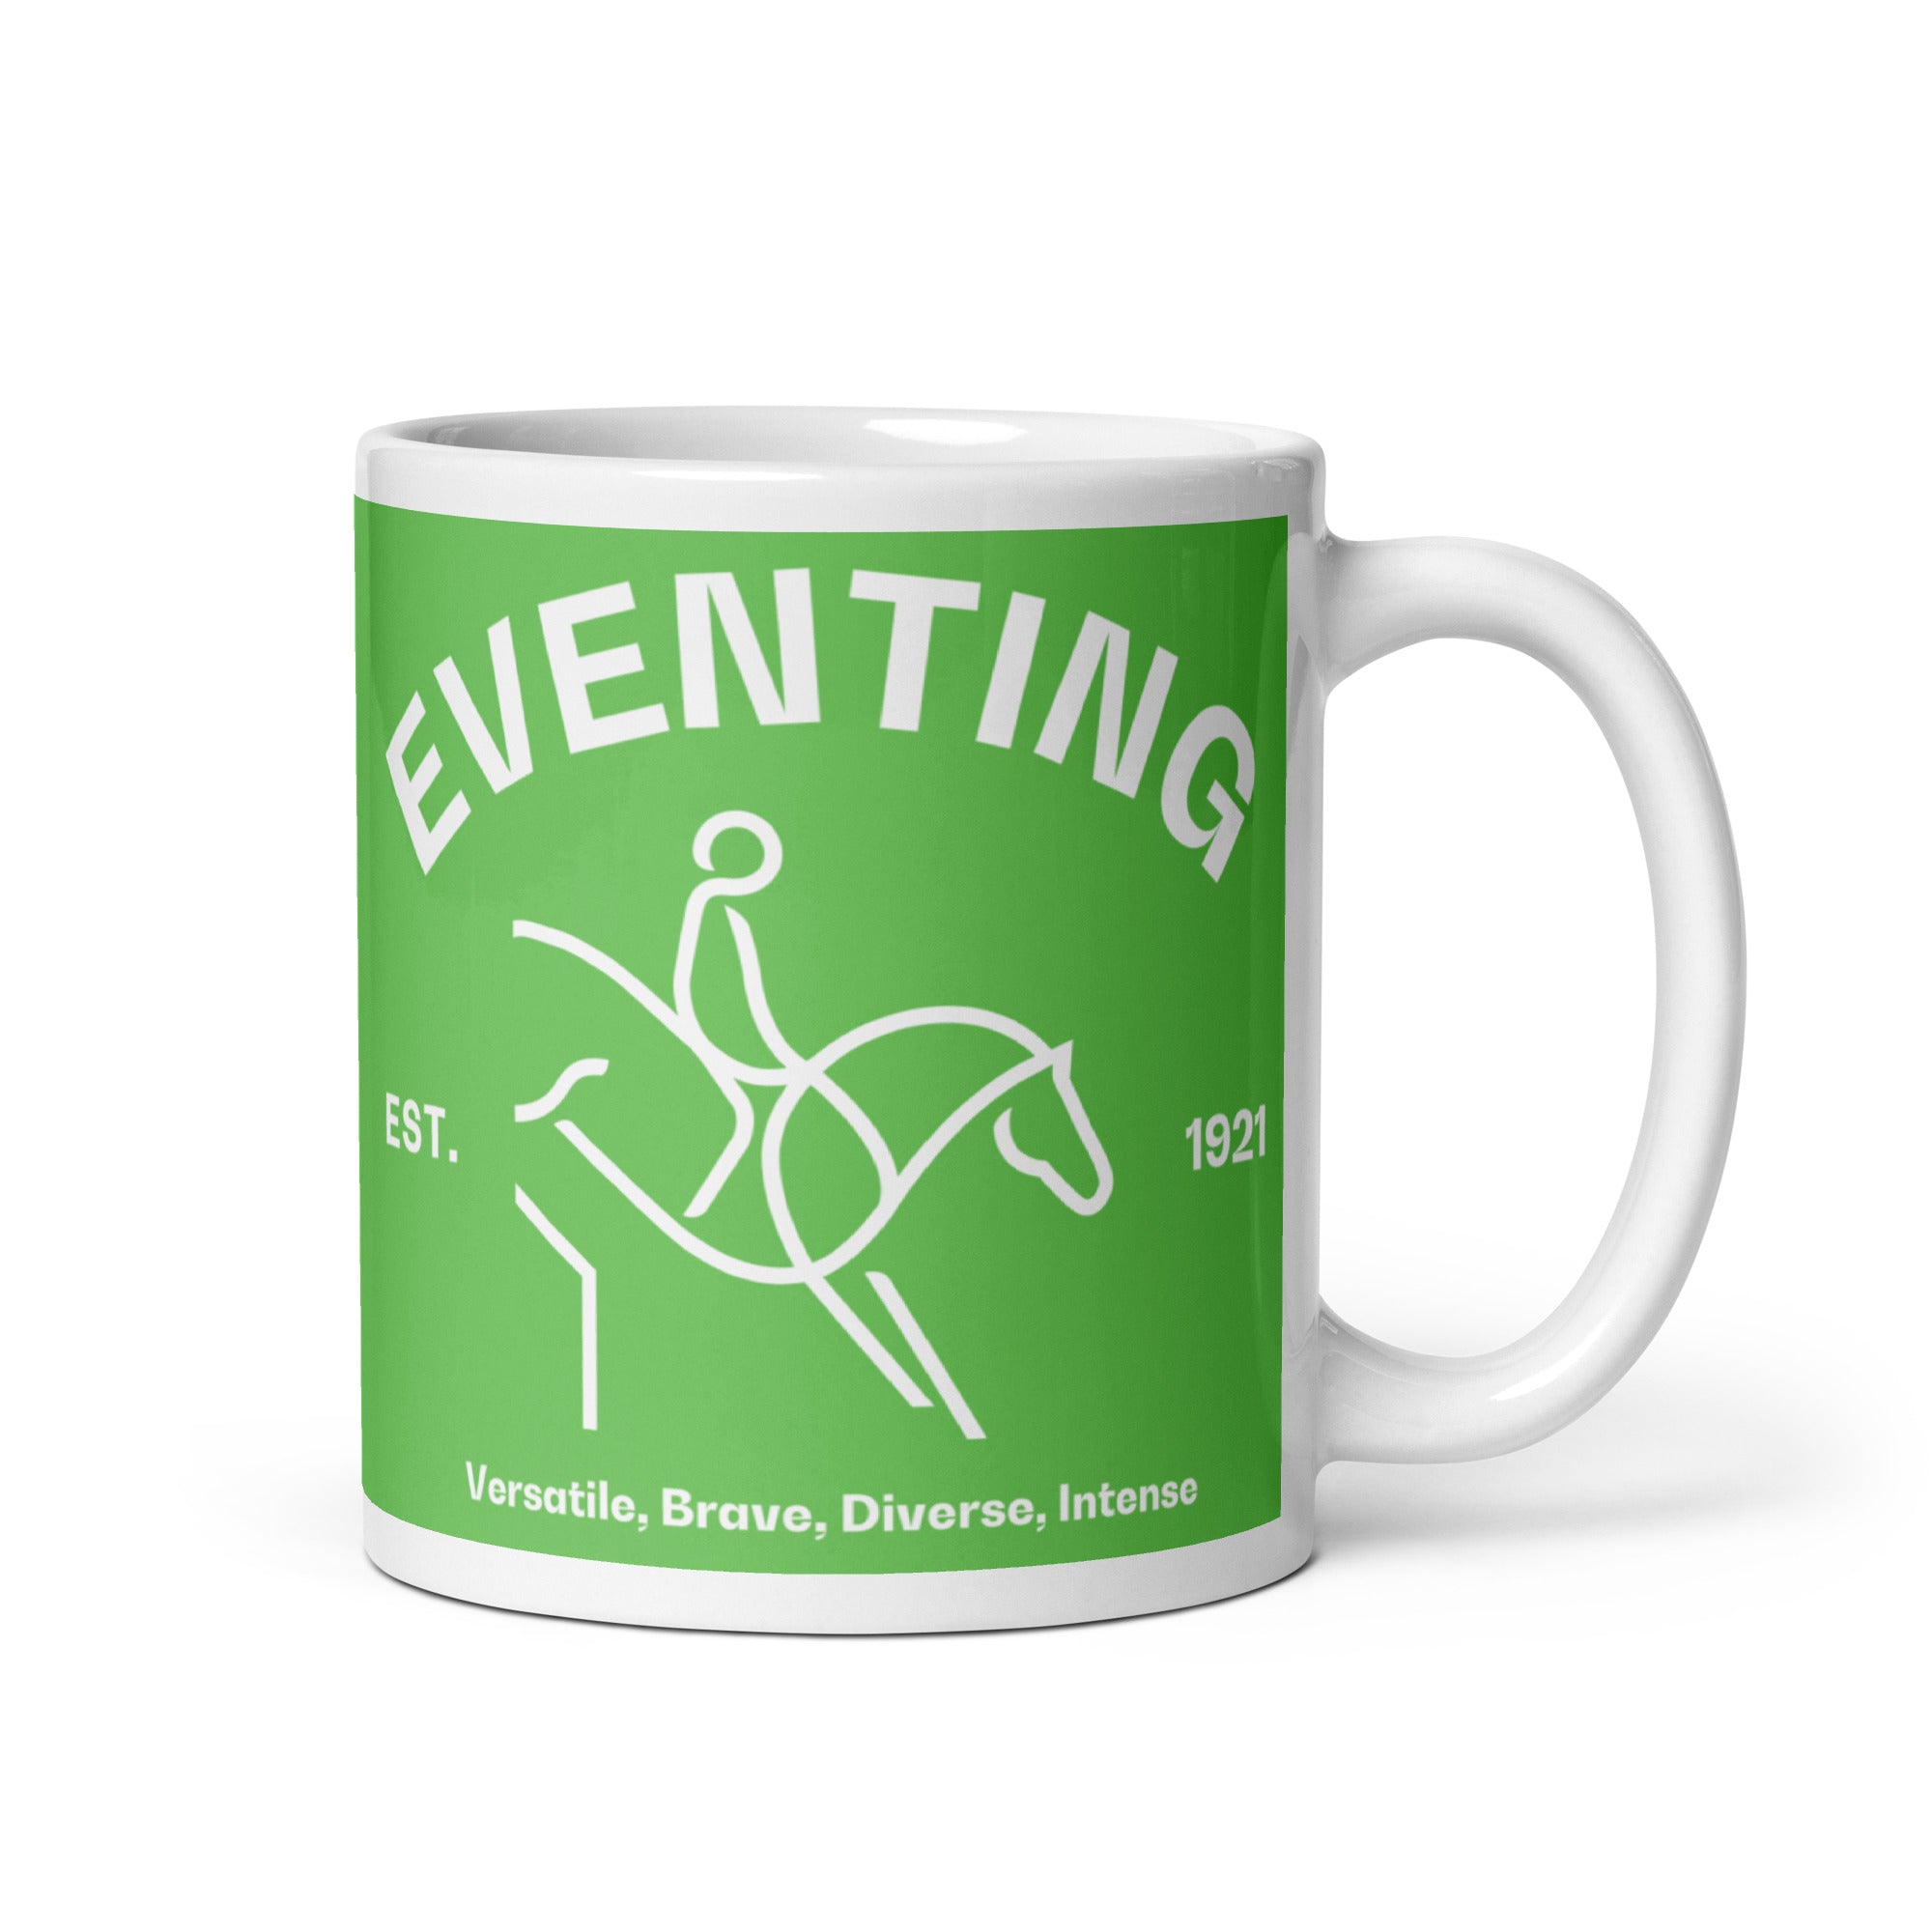 Eventing FEI Mug FEI Official Store